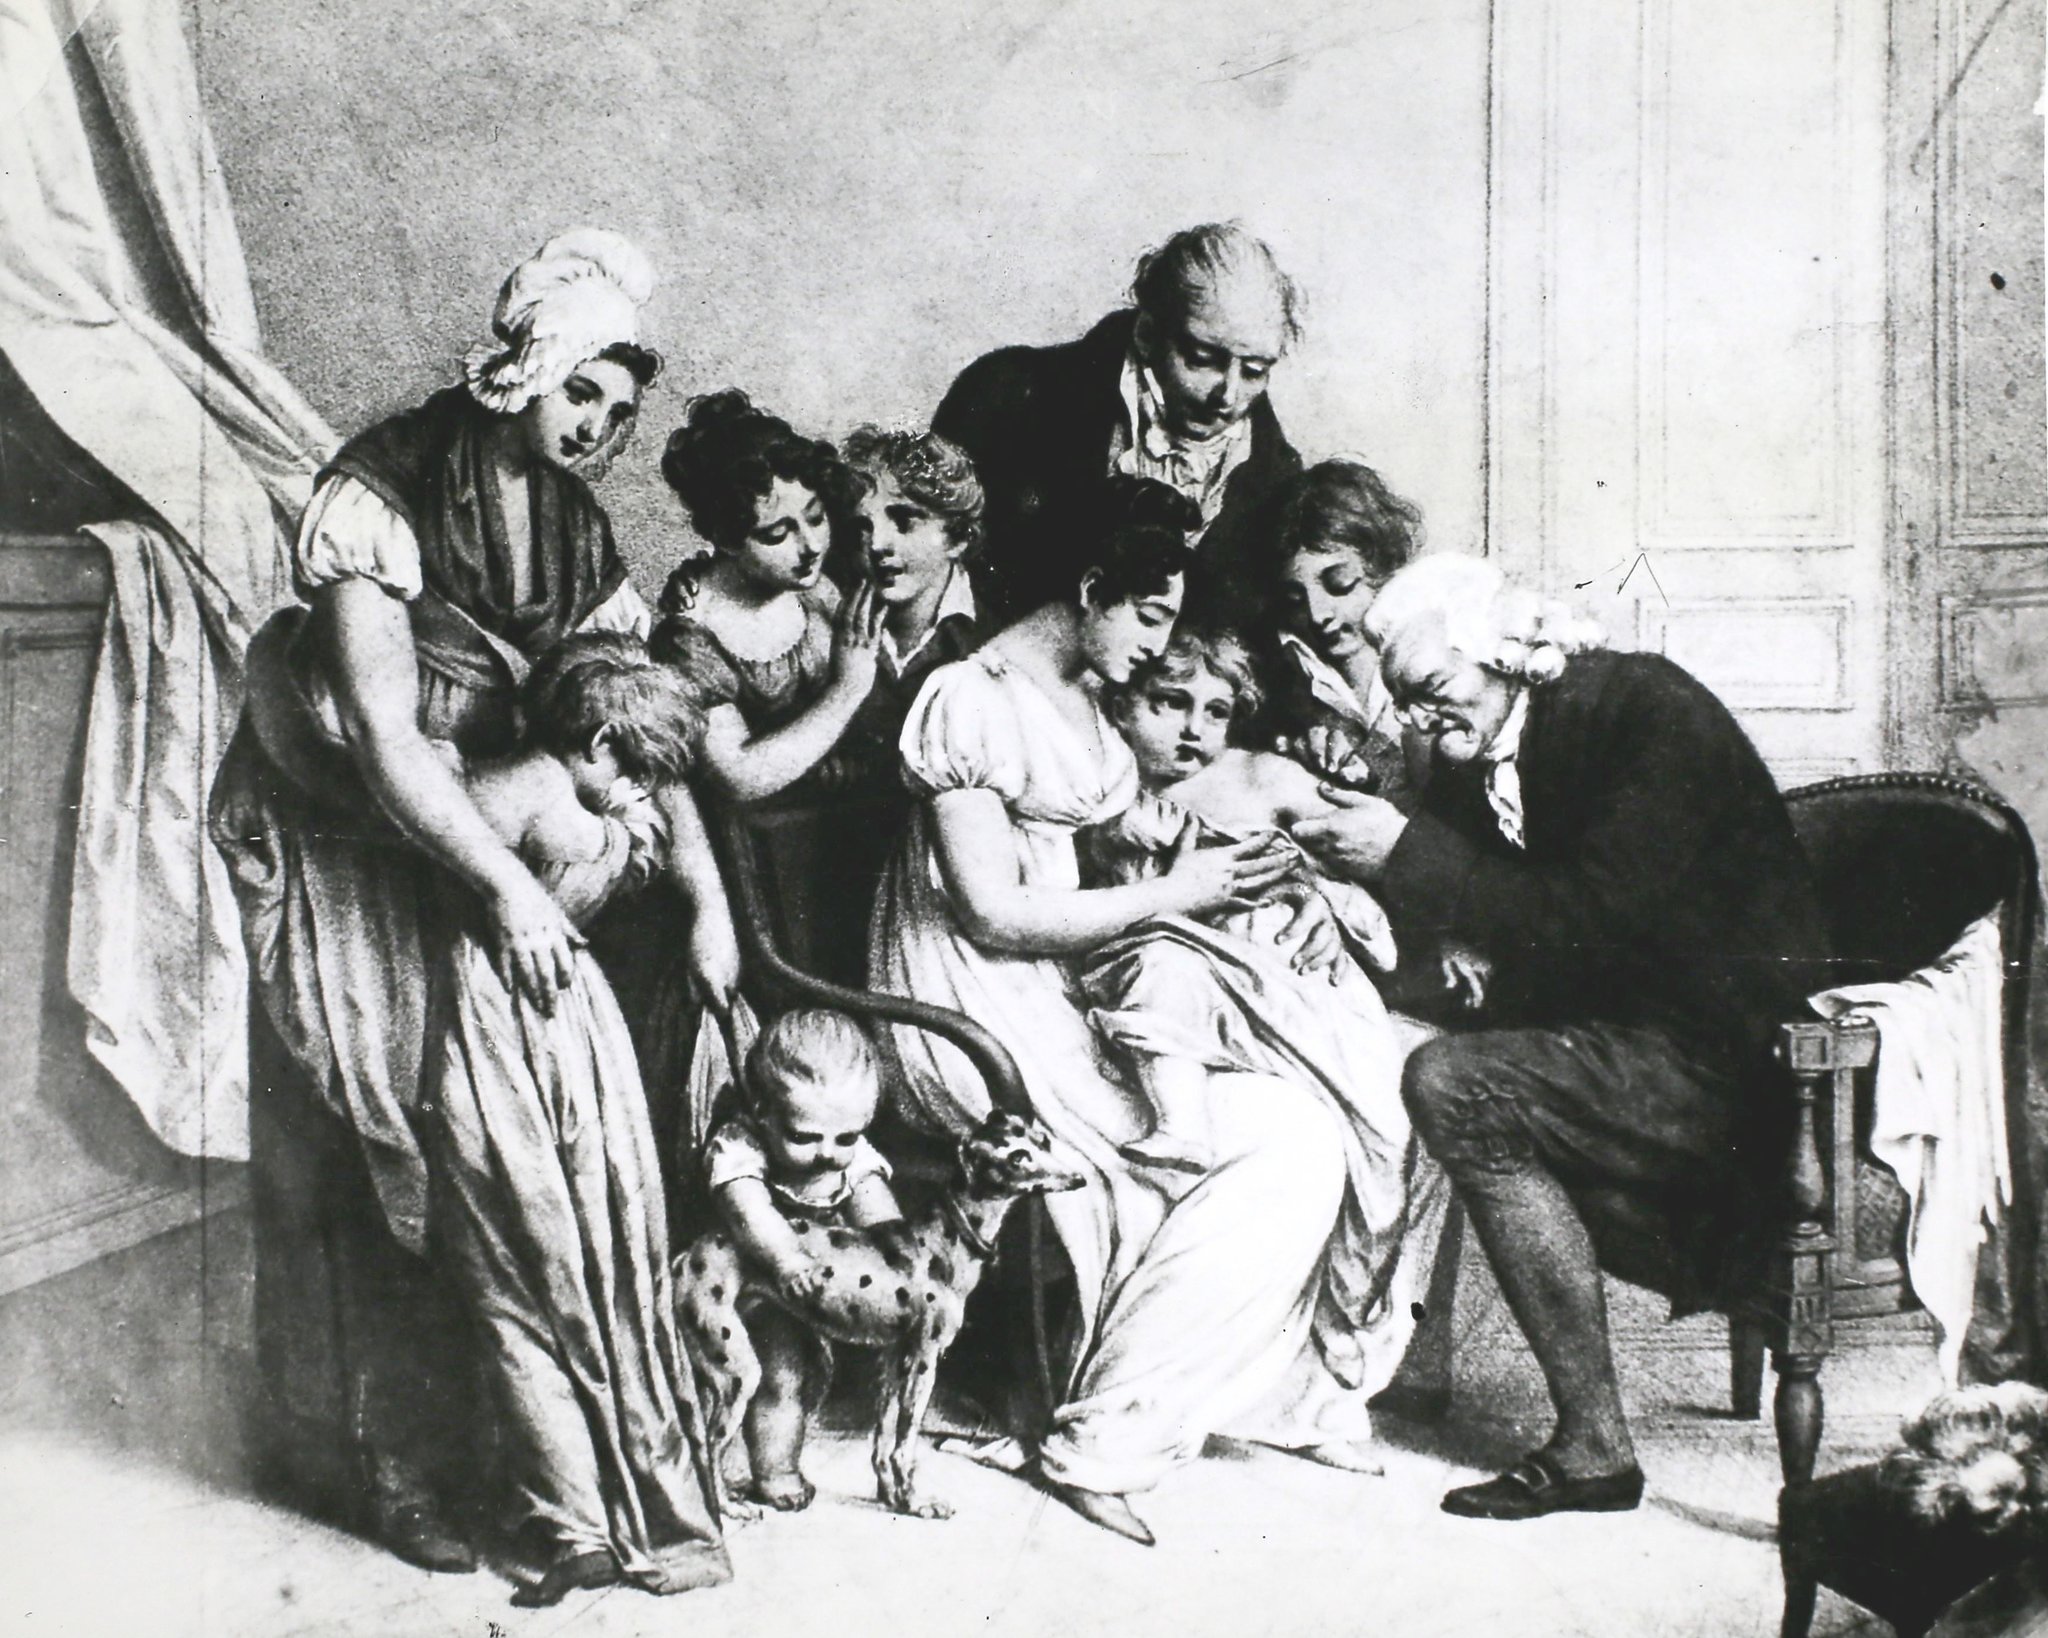 قام إدوارد جينر، أحد المطورين الأوائل للقاح الجدري، بتلقيح طفل ضد المرض في سنة 1796.